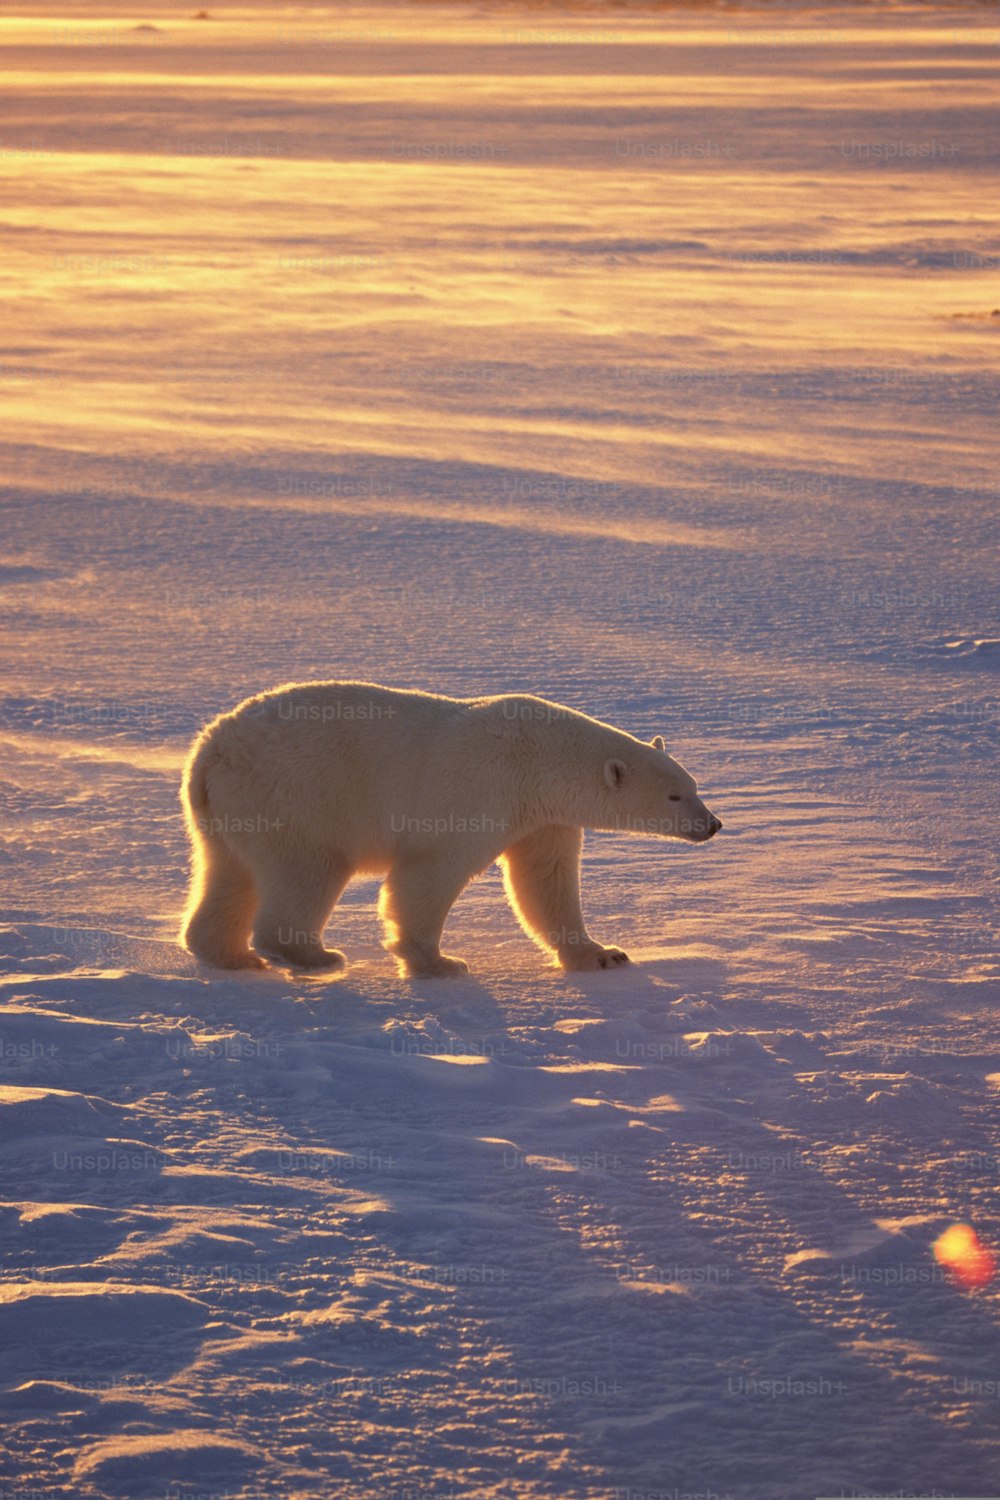 눈 덮인 들판을 가로질러 걷는 북극곰